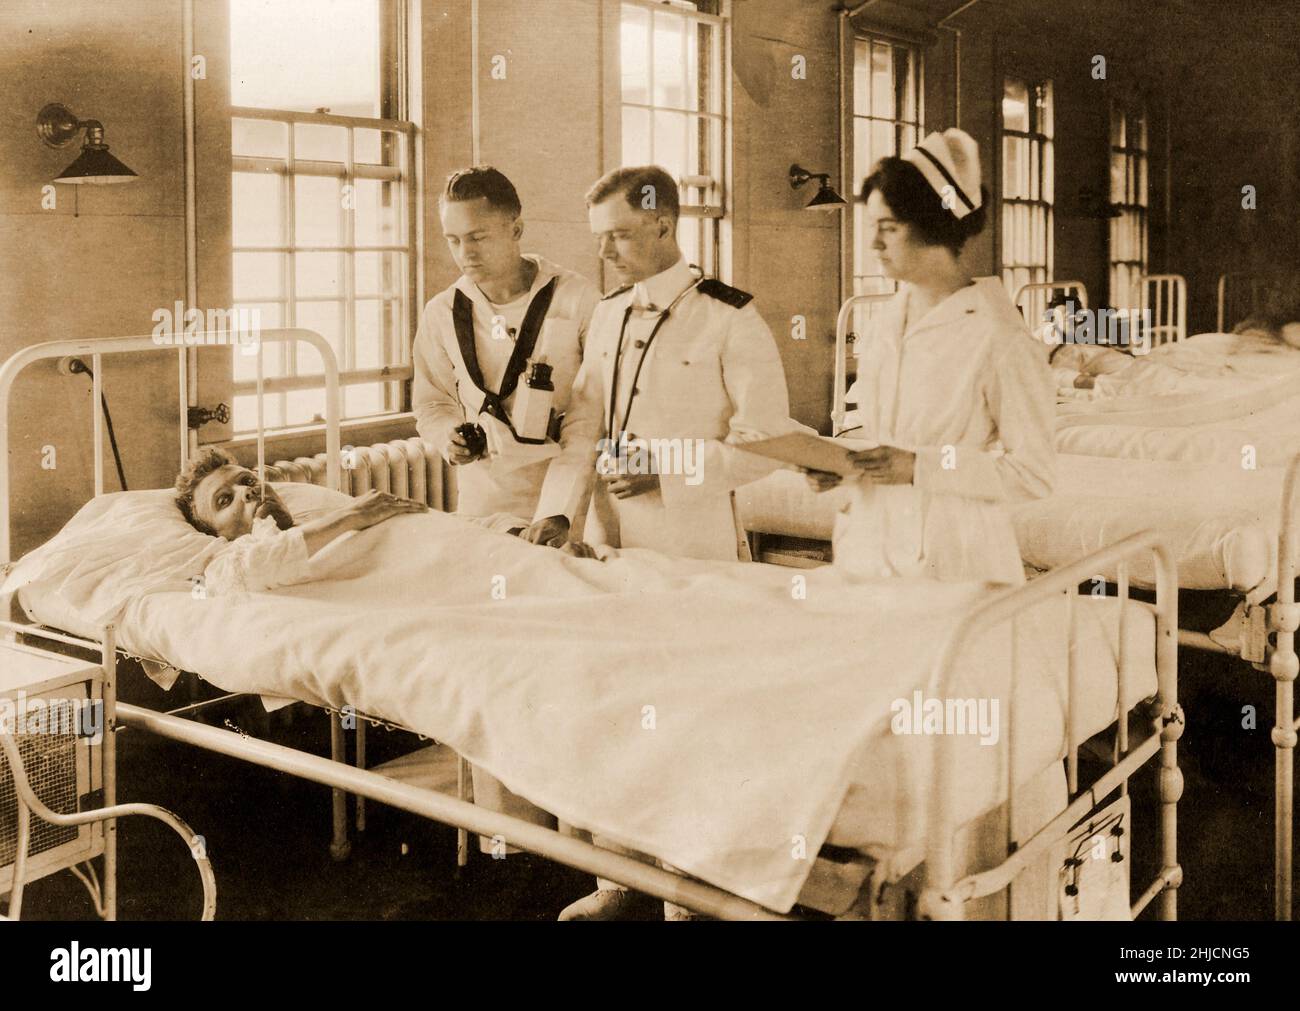 Un patient dans un département de l'hôpital naval des États-Unis, Chelsea, Massachusetts.Un chirurgien, une infirmière et un corpsman examinent un patient dans le quartier 6, groupe 1, 2 juin 1919.Photographie du Commandement de l'histoire navale et du patrimoine. Banque D'Images